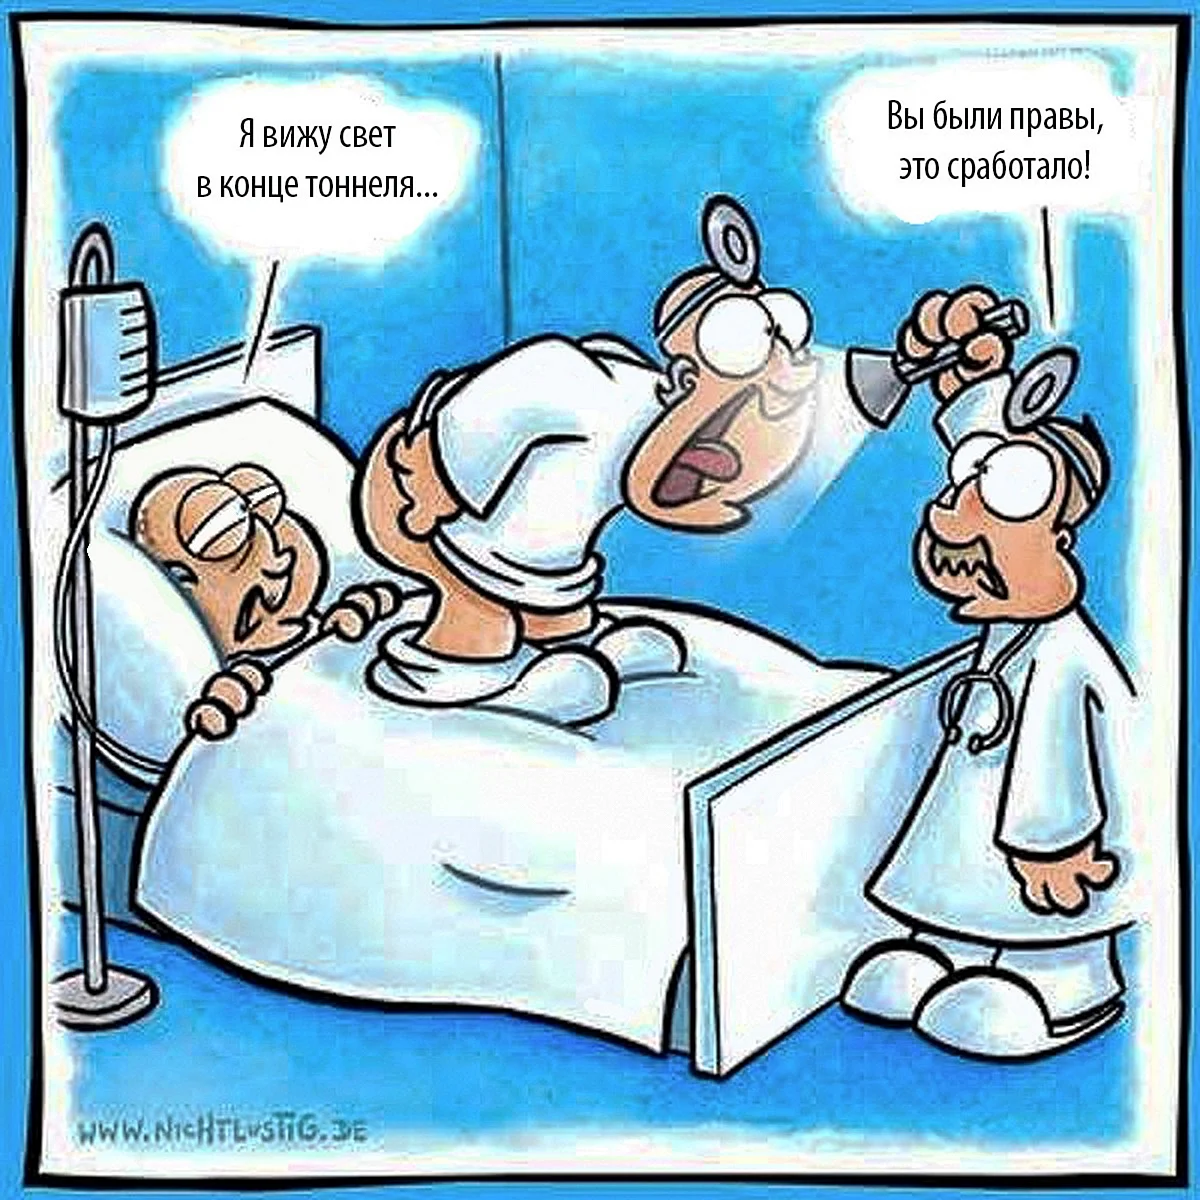 Медицинские анекдоты про врачей